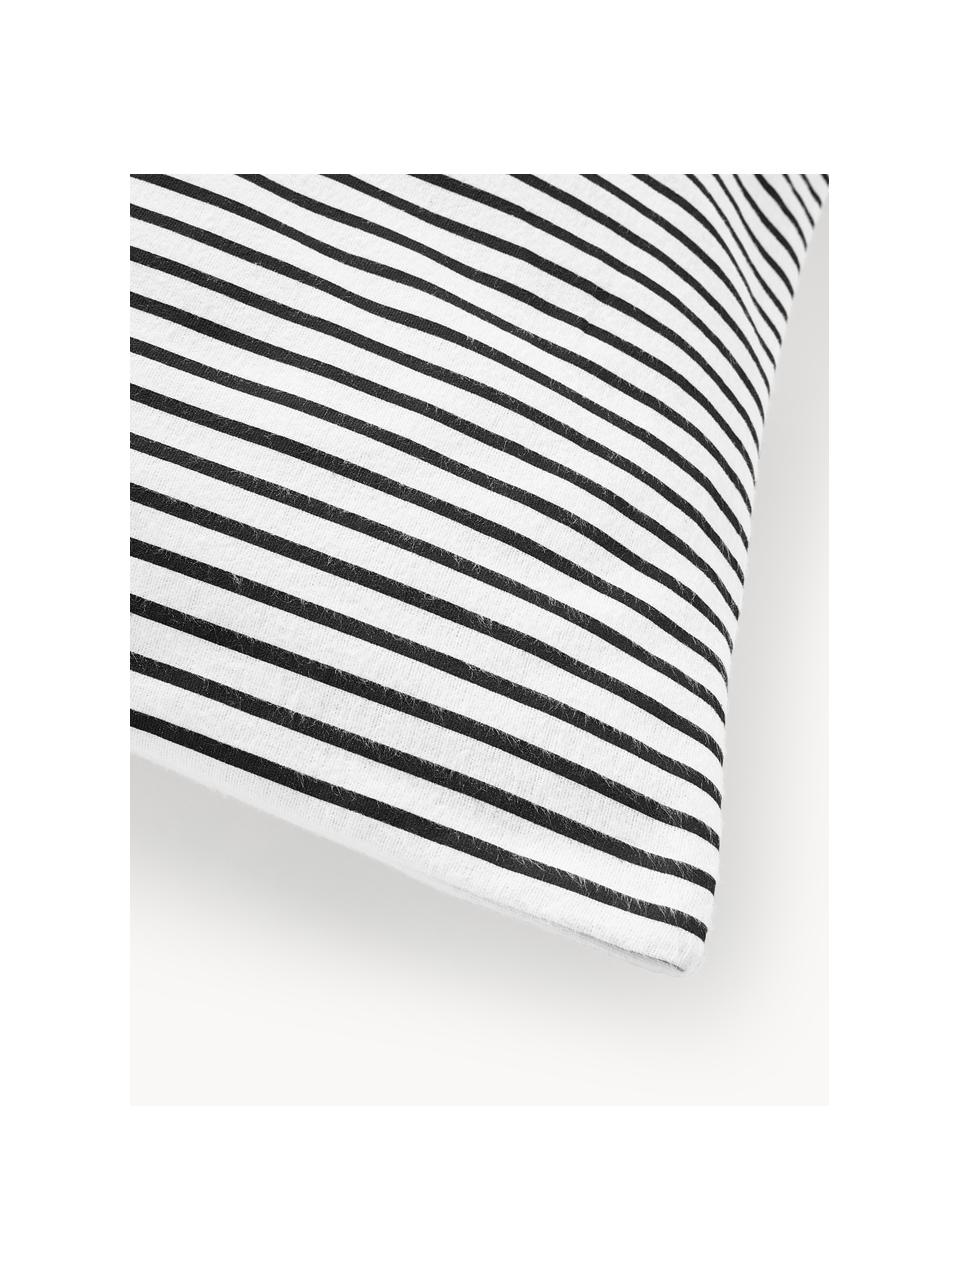 Federa reversibile in flanella con motivo schiaccianoci Noan, Nero, bianco, Larg. 50 x Lung. 80 cm